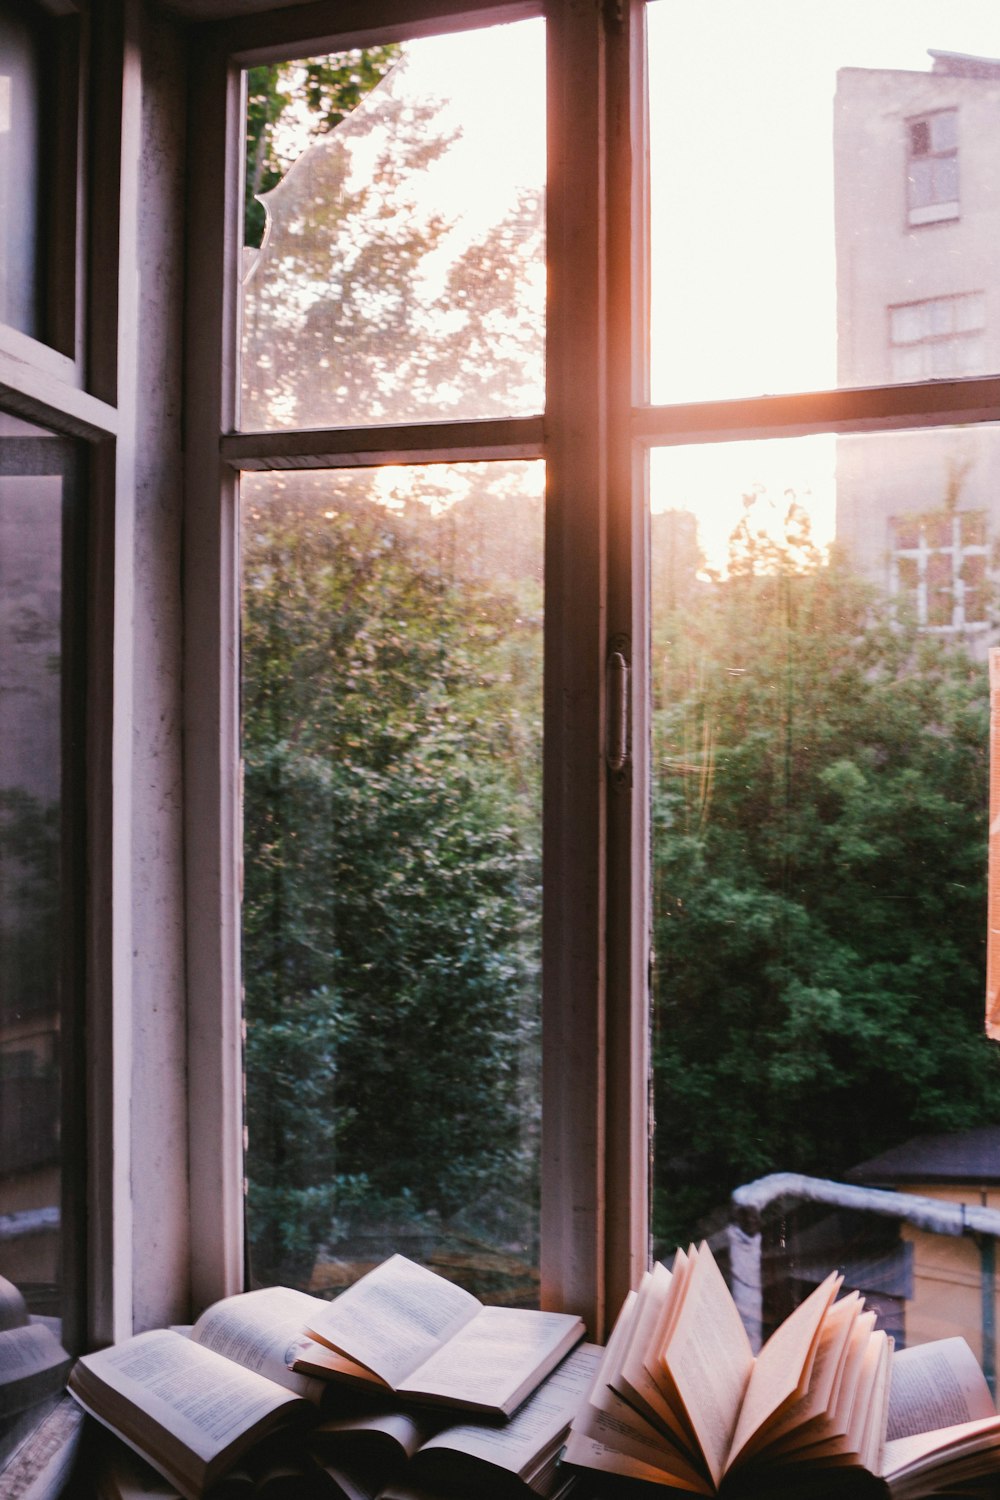 libros junto a la ventana durante la puesta de sol